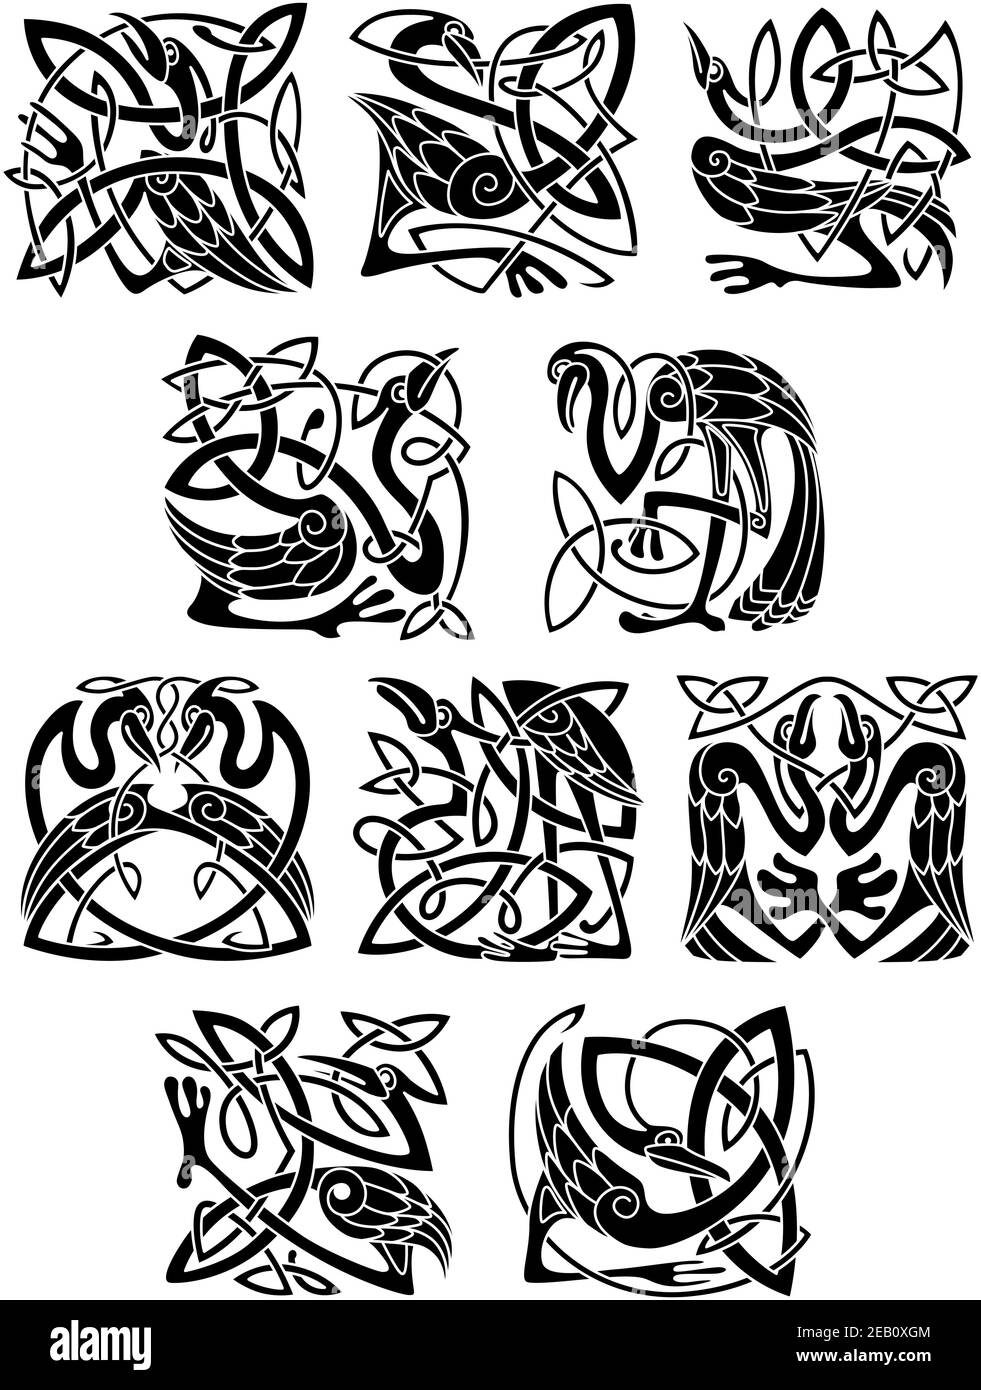 Reiher, Storch- und Kranichvögel in keltischen Mustern, Ornamenten und Dekorationen Stock Vektor